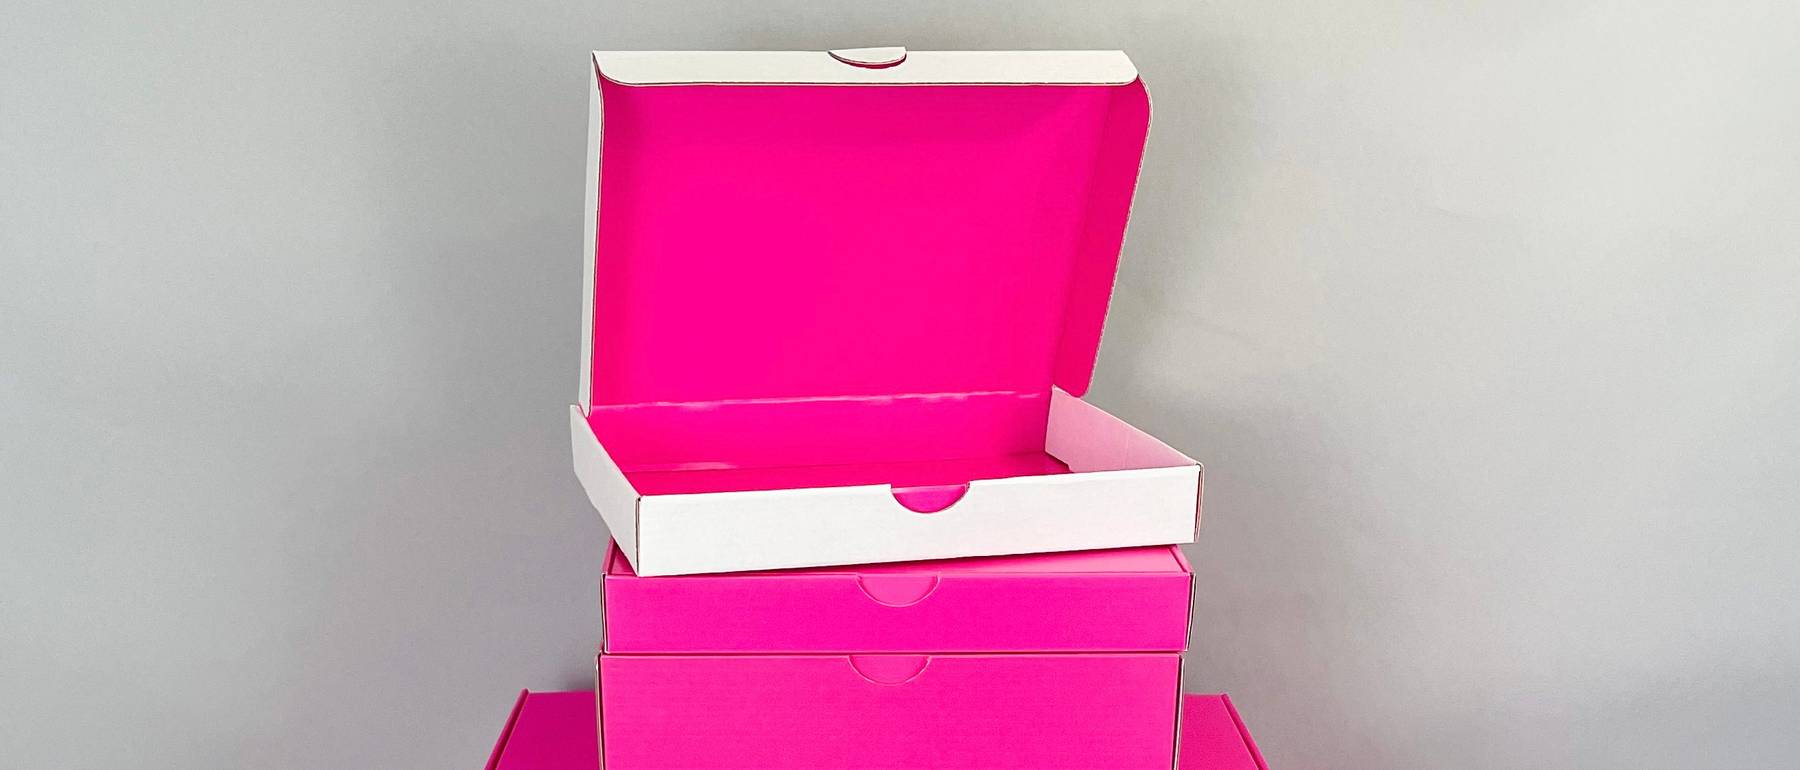 Fuchsia Pink Postal Boxes